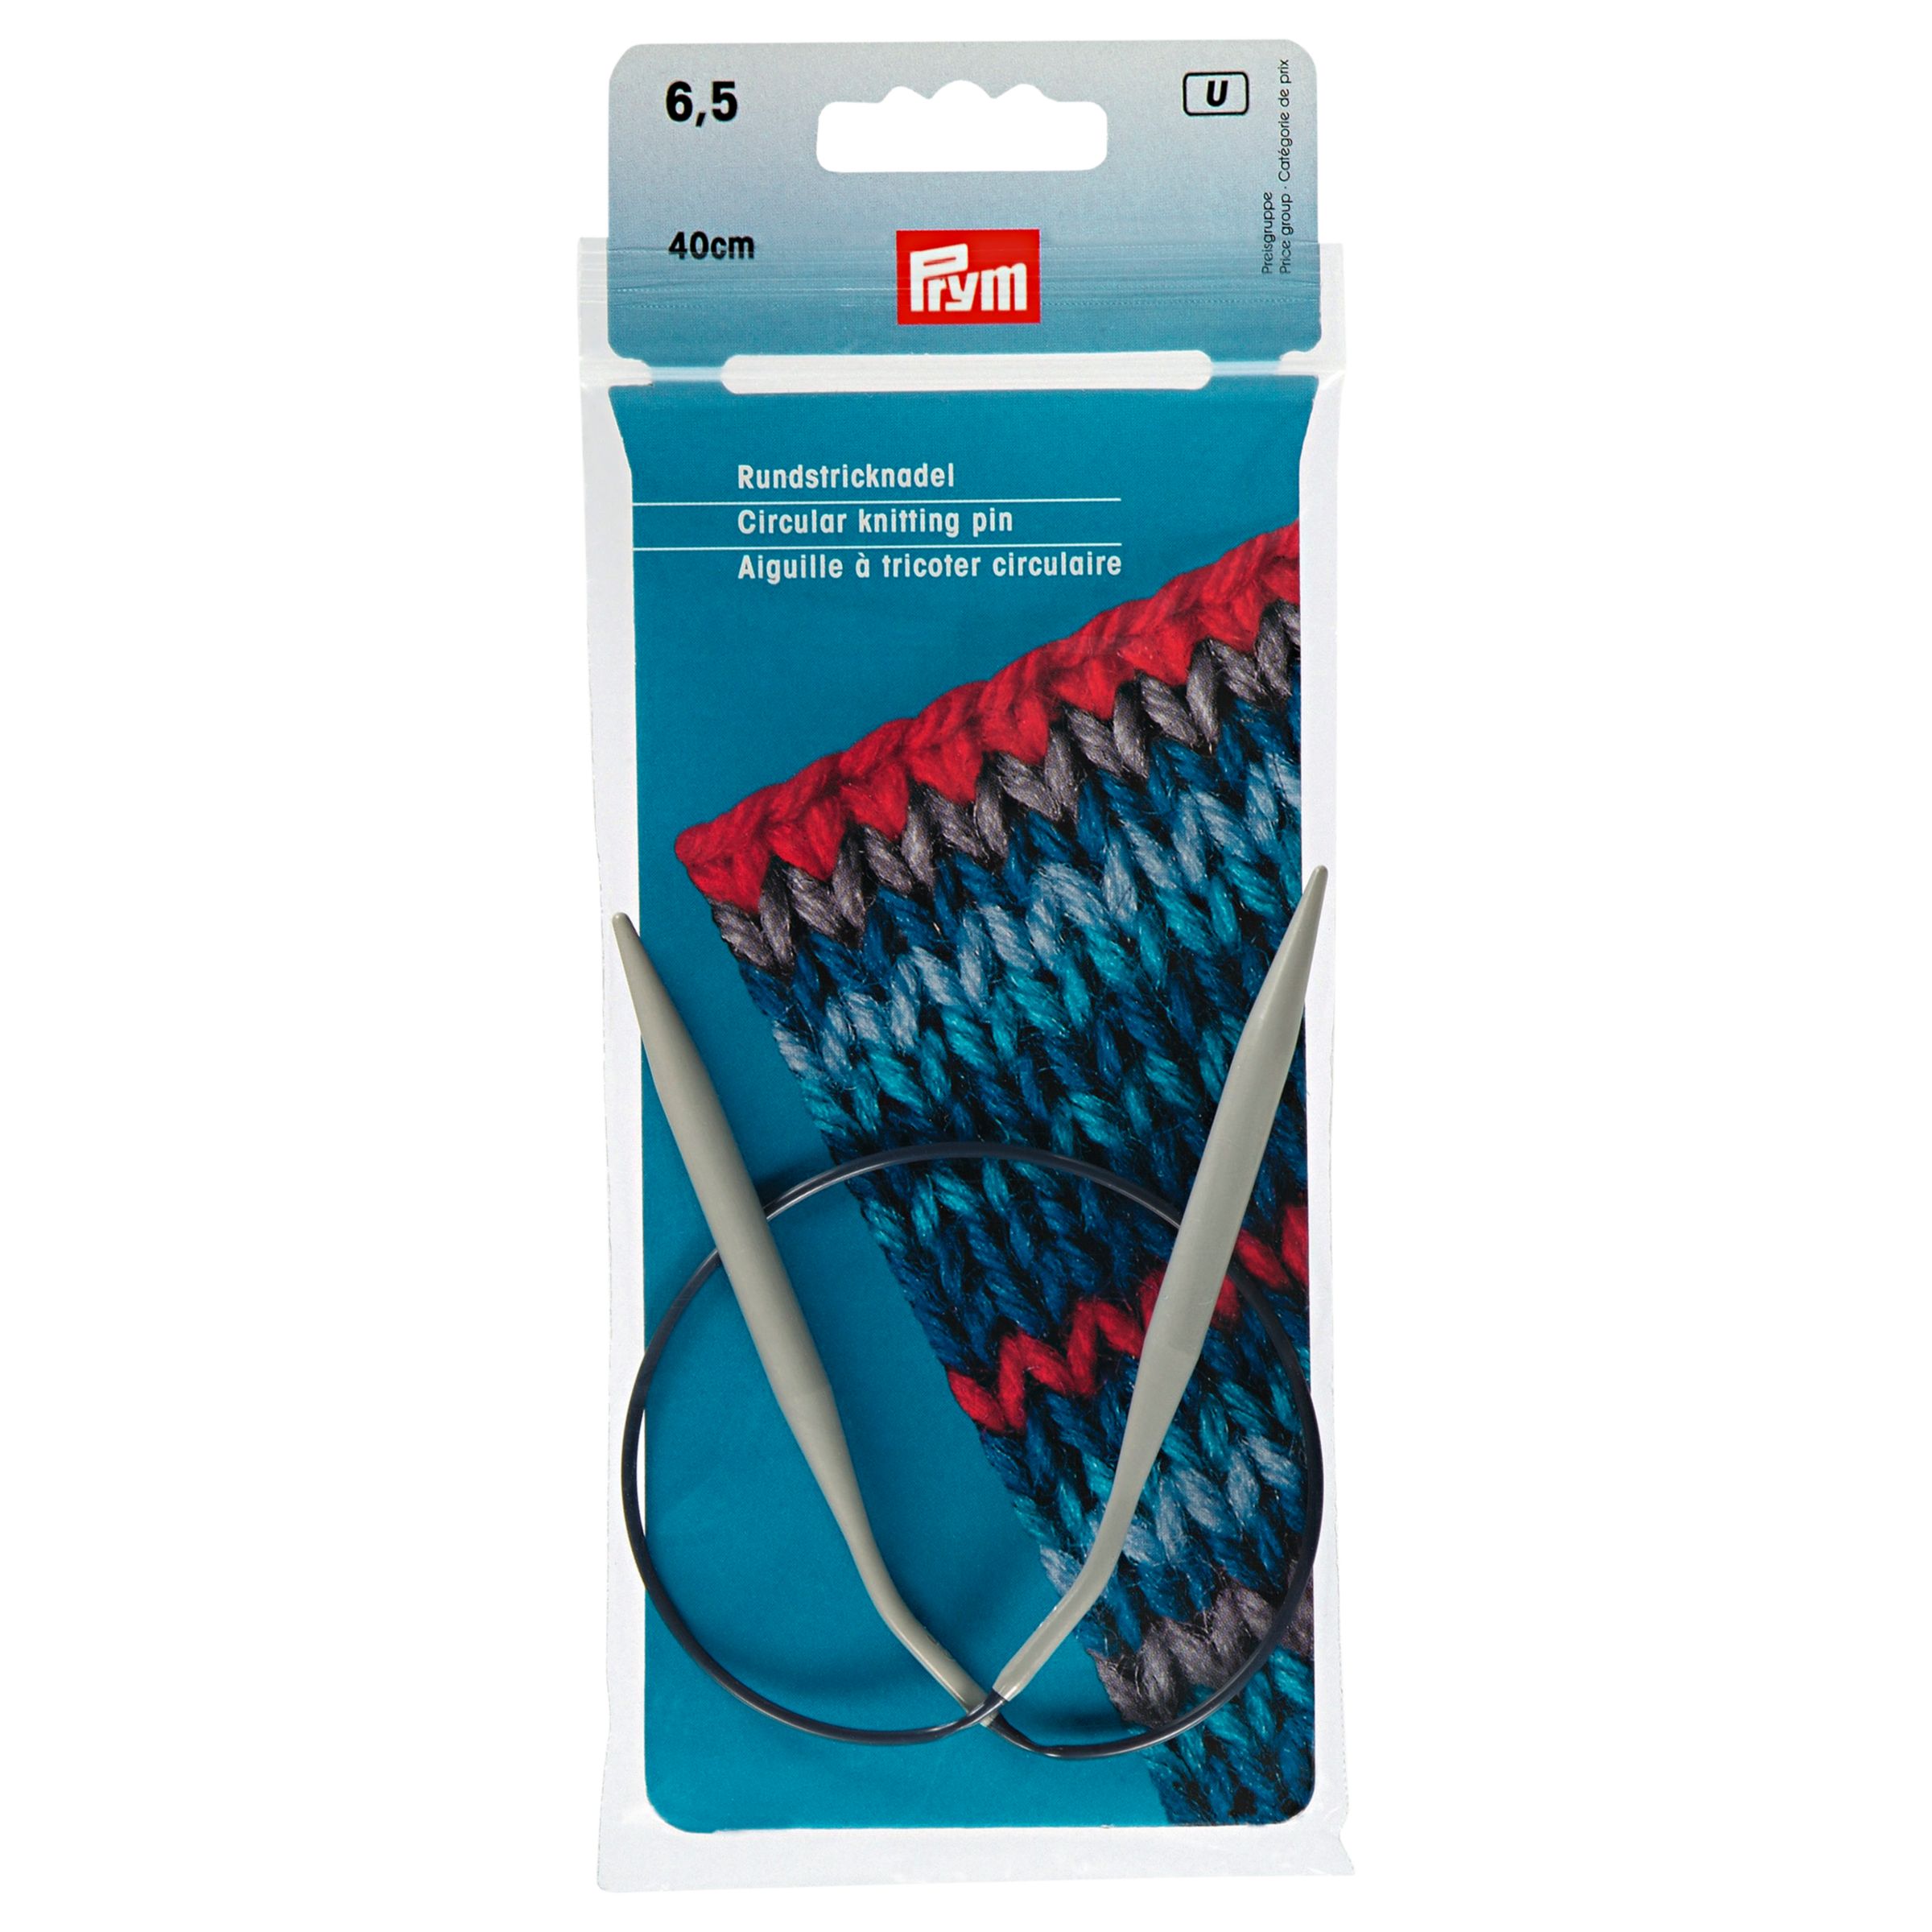 Prym Circular Knitting Needles, 40cm at John Lewis & Partners